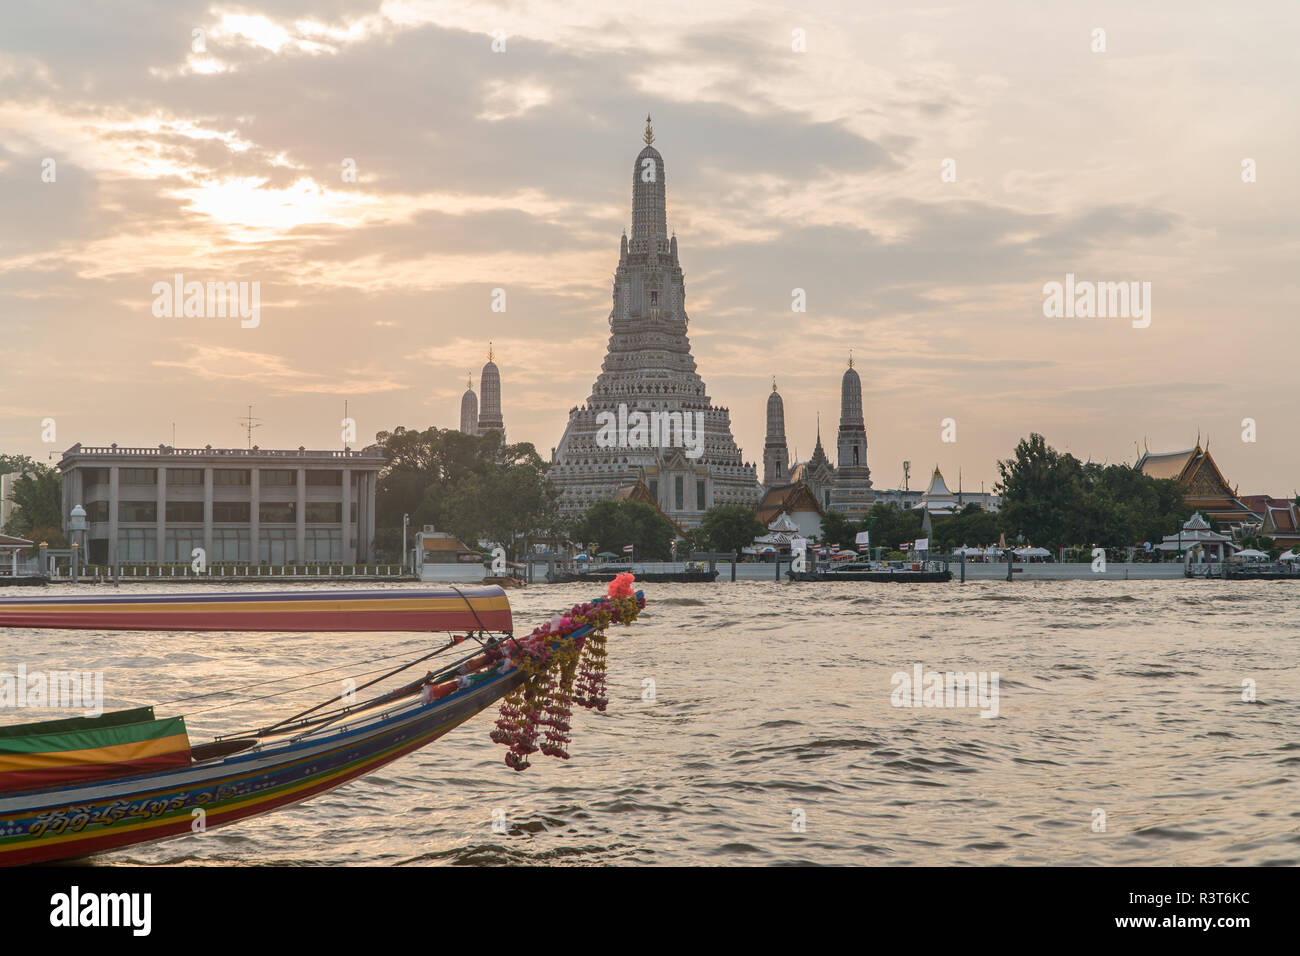 Beliebtes Touristenziel Wat Arun Tempel der Morgendämmerung über den Chao Phraya Fluss in Bangkok, Thailand bei Sonnenuntergang mit traditionellen langen Schwänzbooten Stockfoto